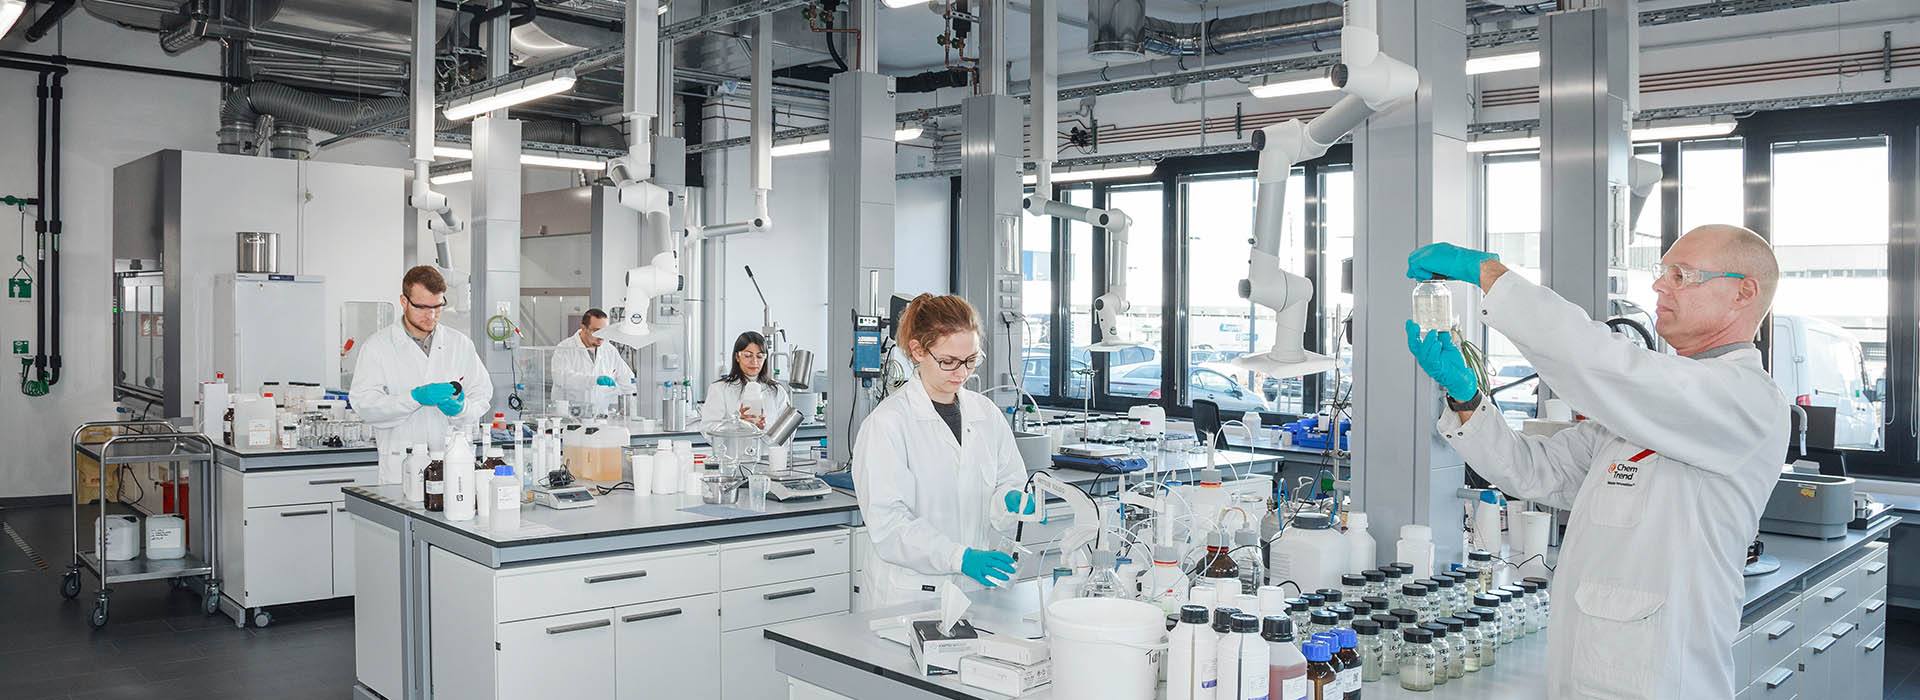 Nel centro di tecnologia avanzata Chem-Trend sono disponibili nuove attrezzature e spazi dedicati ai laboratori per la ricerca e svluppo dei settori Termoplastico, Poliuretano e Compositi del legno.